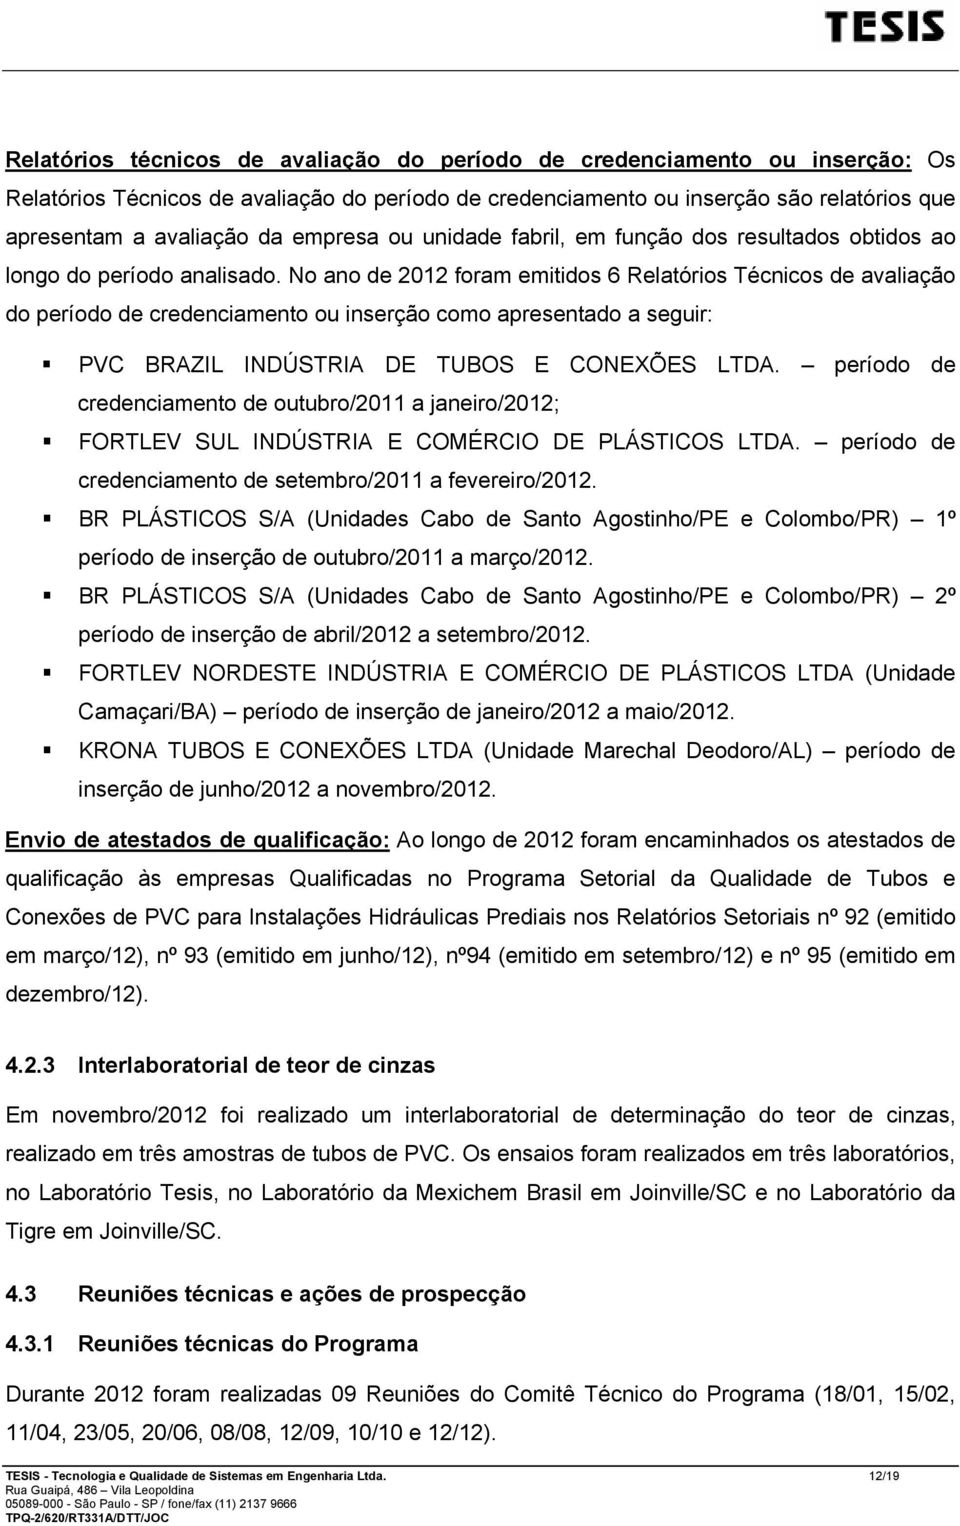 No ano de 2012 foram emitidos 6 Relatórios Técnicos de avaliação do período de credenciamento ou inserção como apresentado a seguir: PVC BRAZIL INDÚSTRIA DE TUBOS E CONEXÕES LTDA.